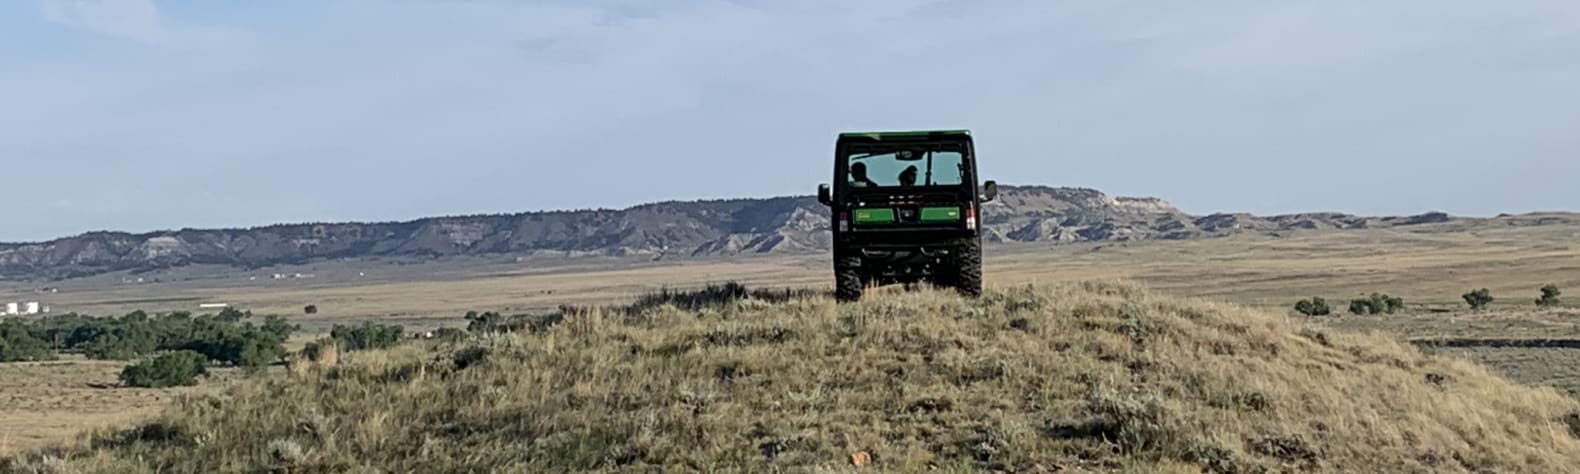 Remote & quiet Wyoming ranch.